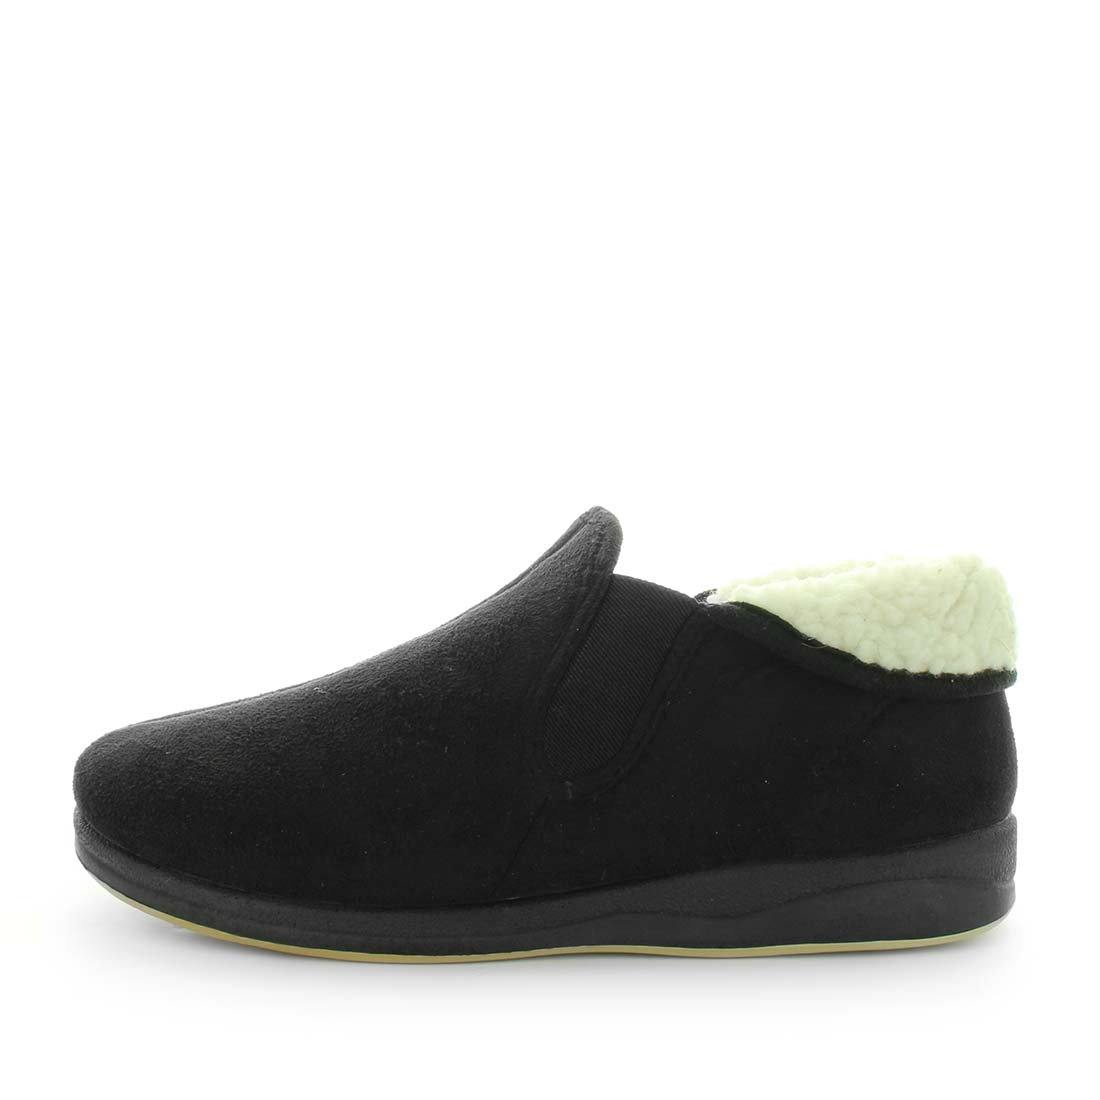 TEZZA by PANDA - iShoes - Men's Shoes, Men's Shoes: Slippers - FOOTWEAR-FOOTWEAR